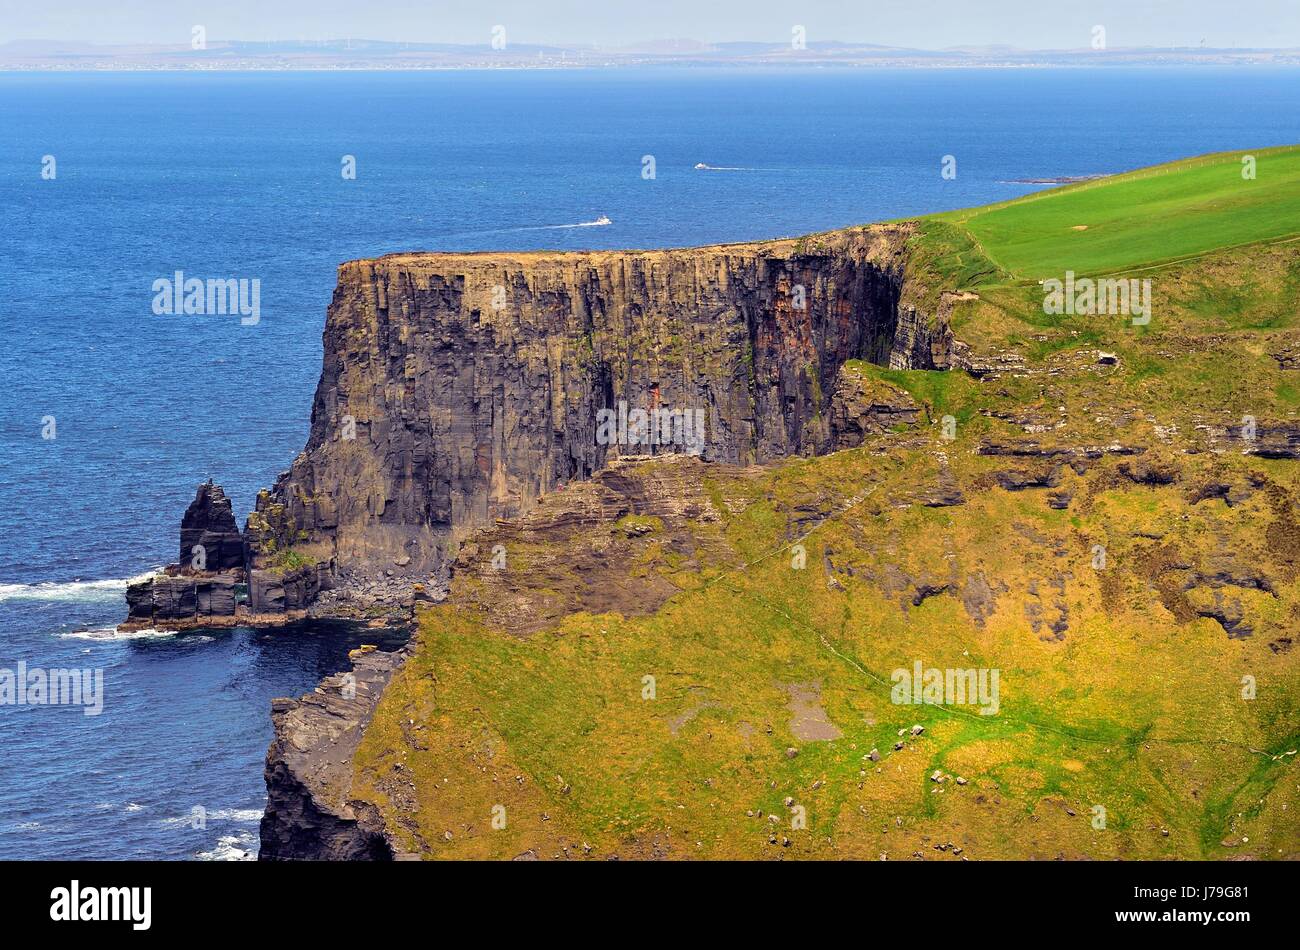 Una sezione di frastagliate scogliere di Moher, al confine con l'Oceano Atlantico, vicino Liscannor, County Clare, Irlanda, guardando a nord verso le isole Aran. Foto Stock